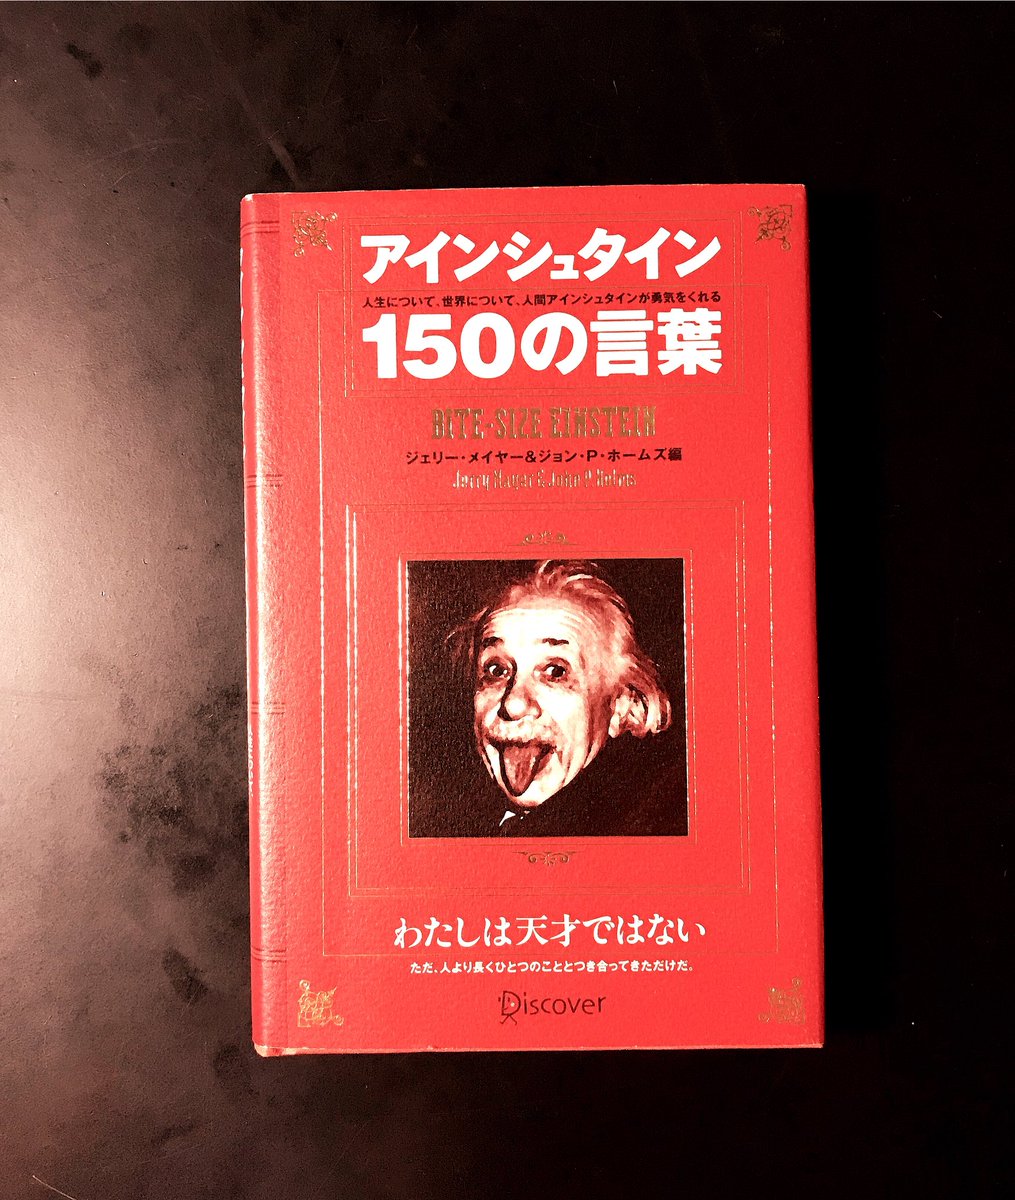 ぷろk ハルピチ将棋喫茶 と金珈琲okinawa K書評 アインシュタイン150の言葉 わたしは 天才ではありません ただ 人より長くひとつのことと つき合ってきただけです わたしには 特殊な才能はありません ただ 熱狂的な好奇心が ある